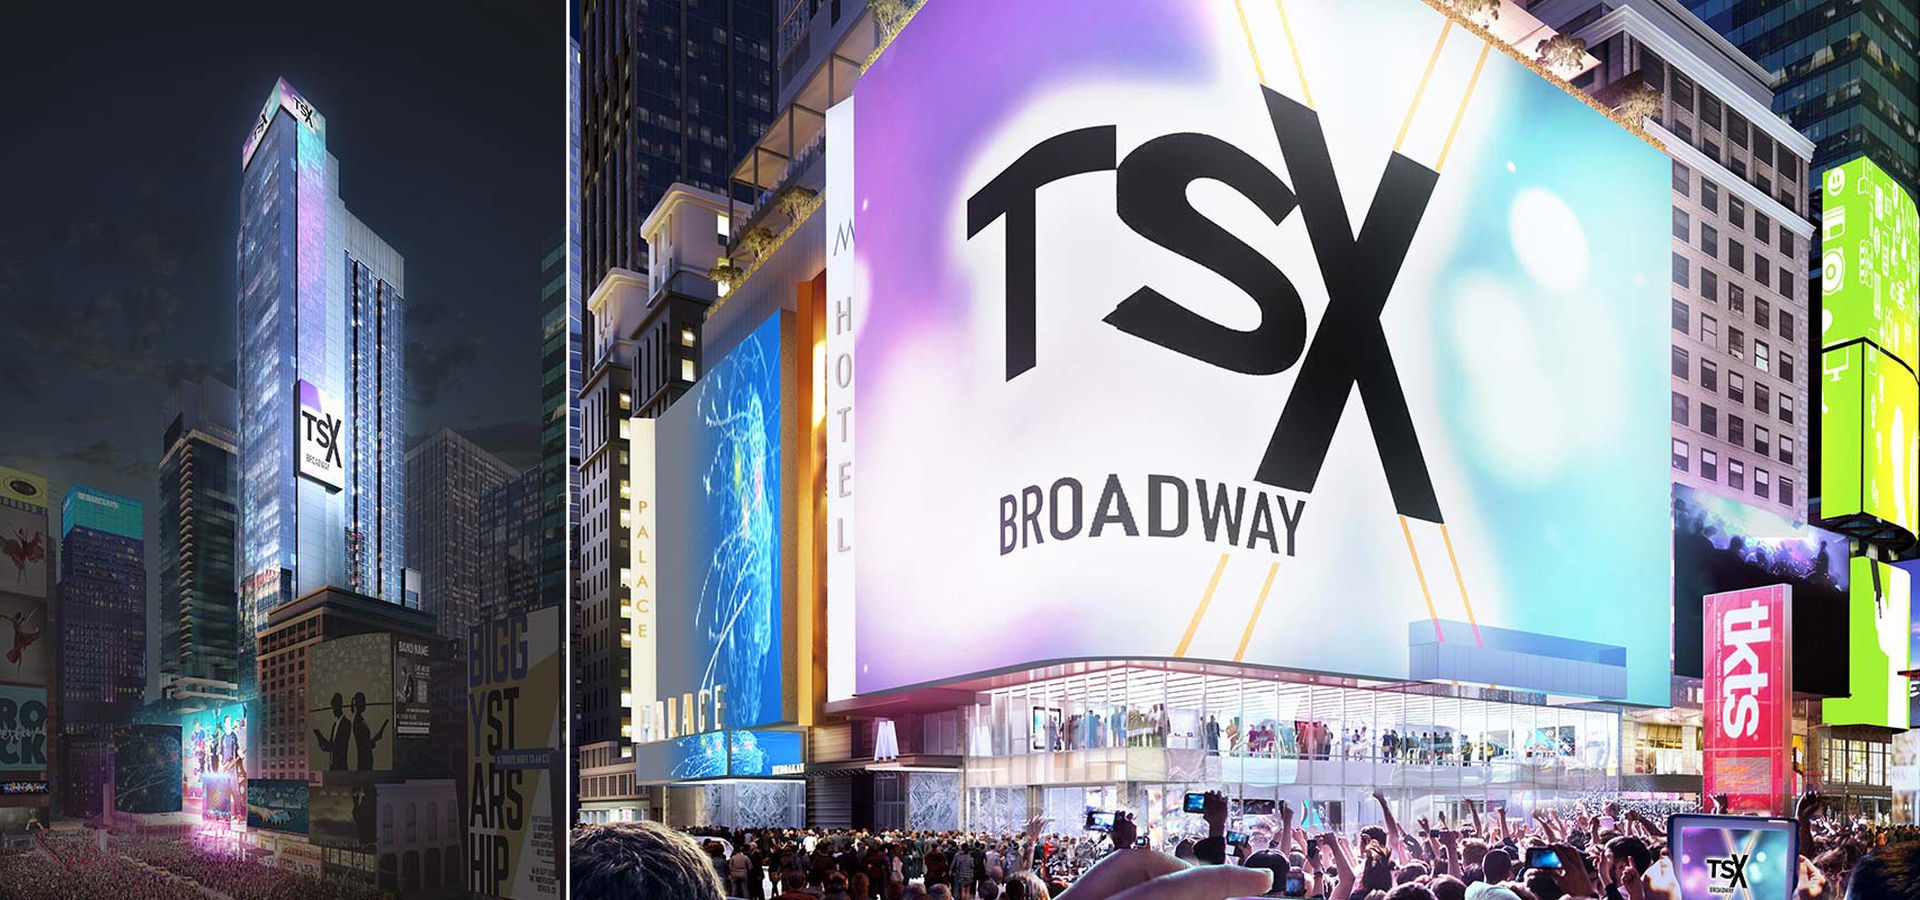 TSX Broadway